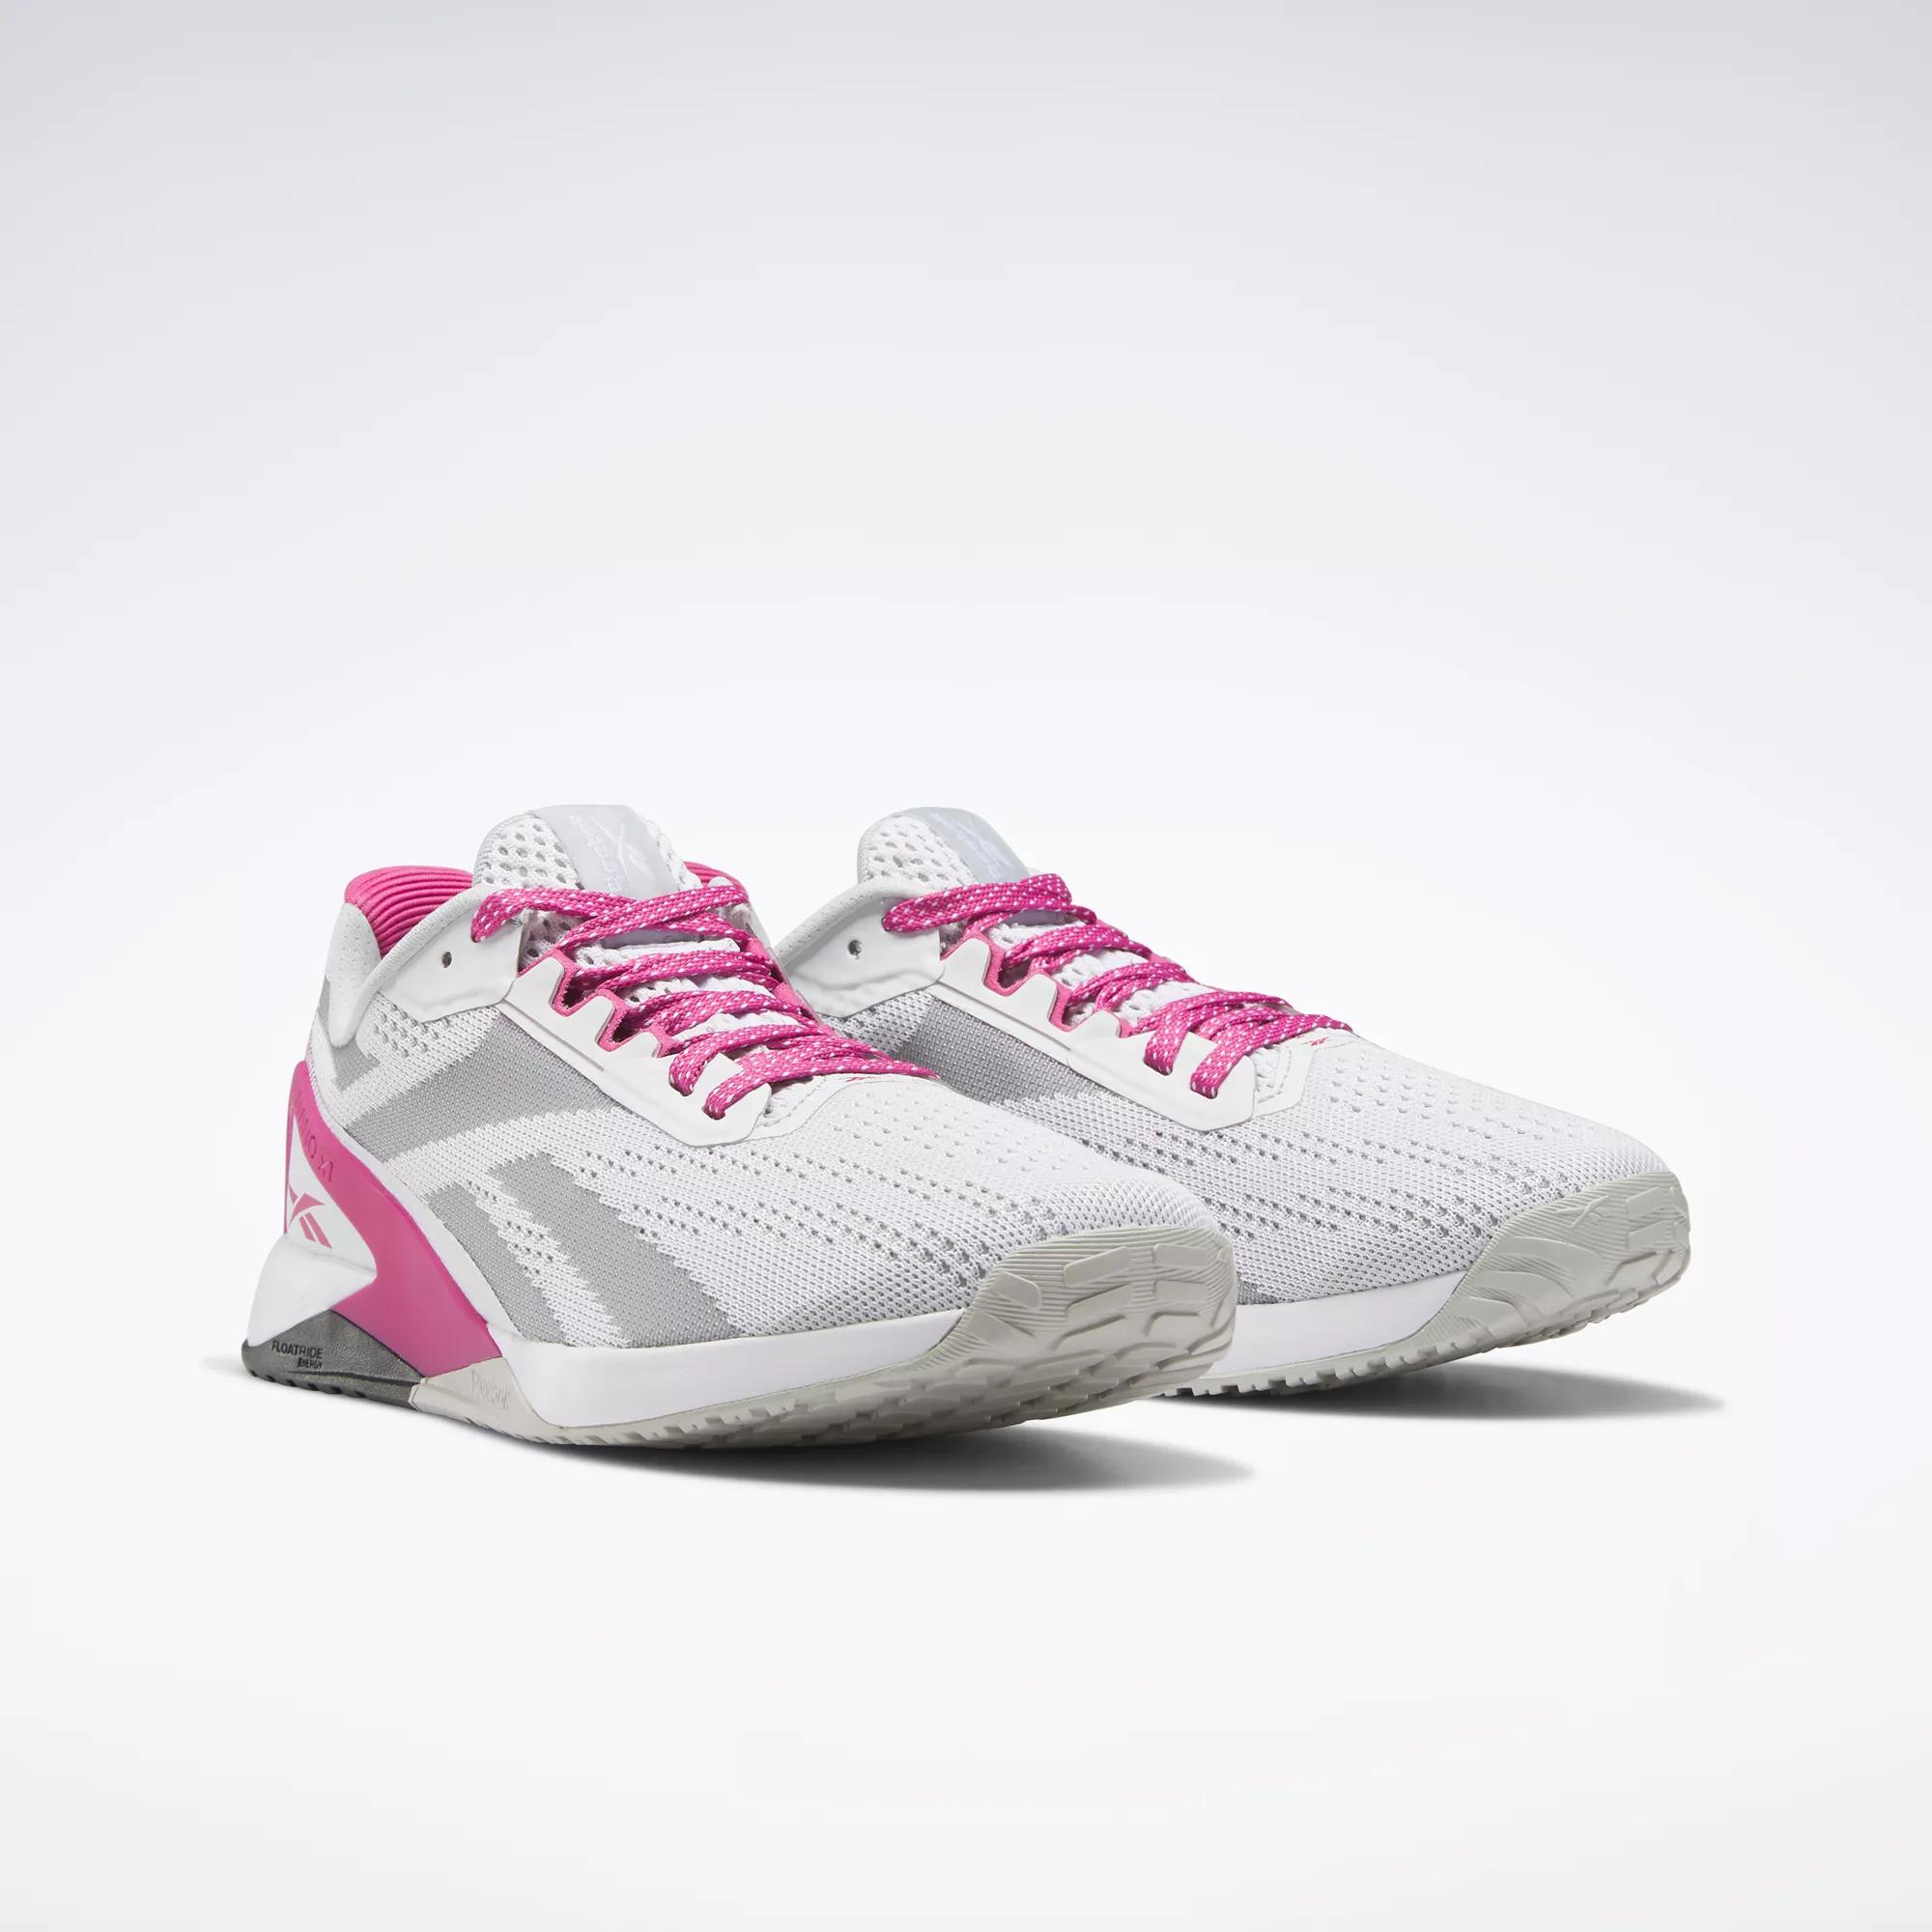 Nano X1 Women's Training Shoes - Ftwr / Semi Proud Pink / Pure Grey 2 |